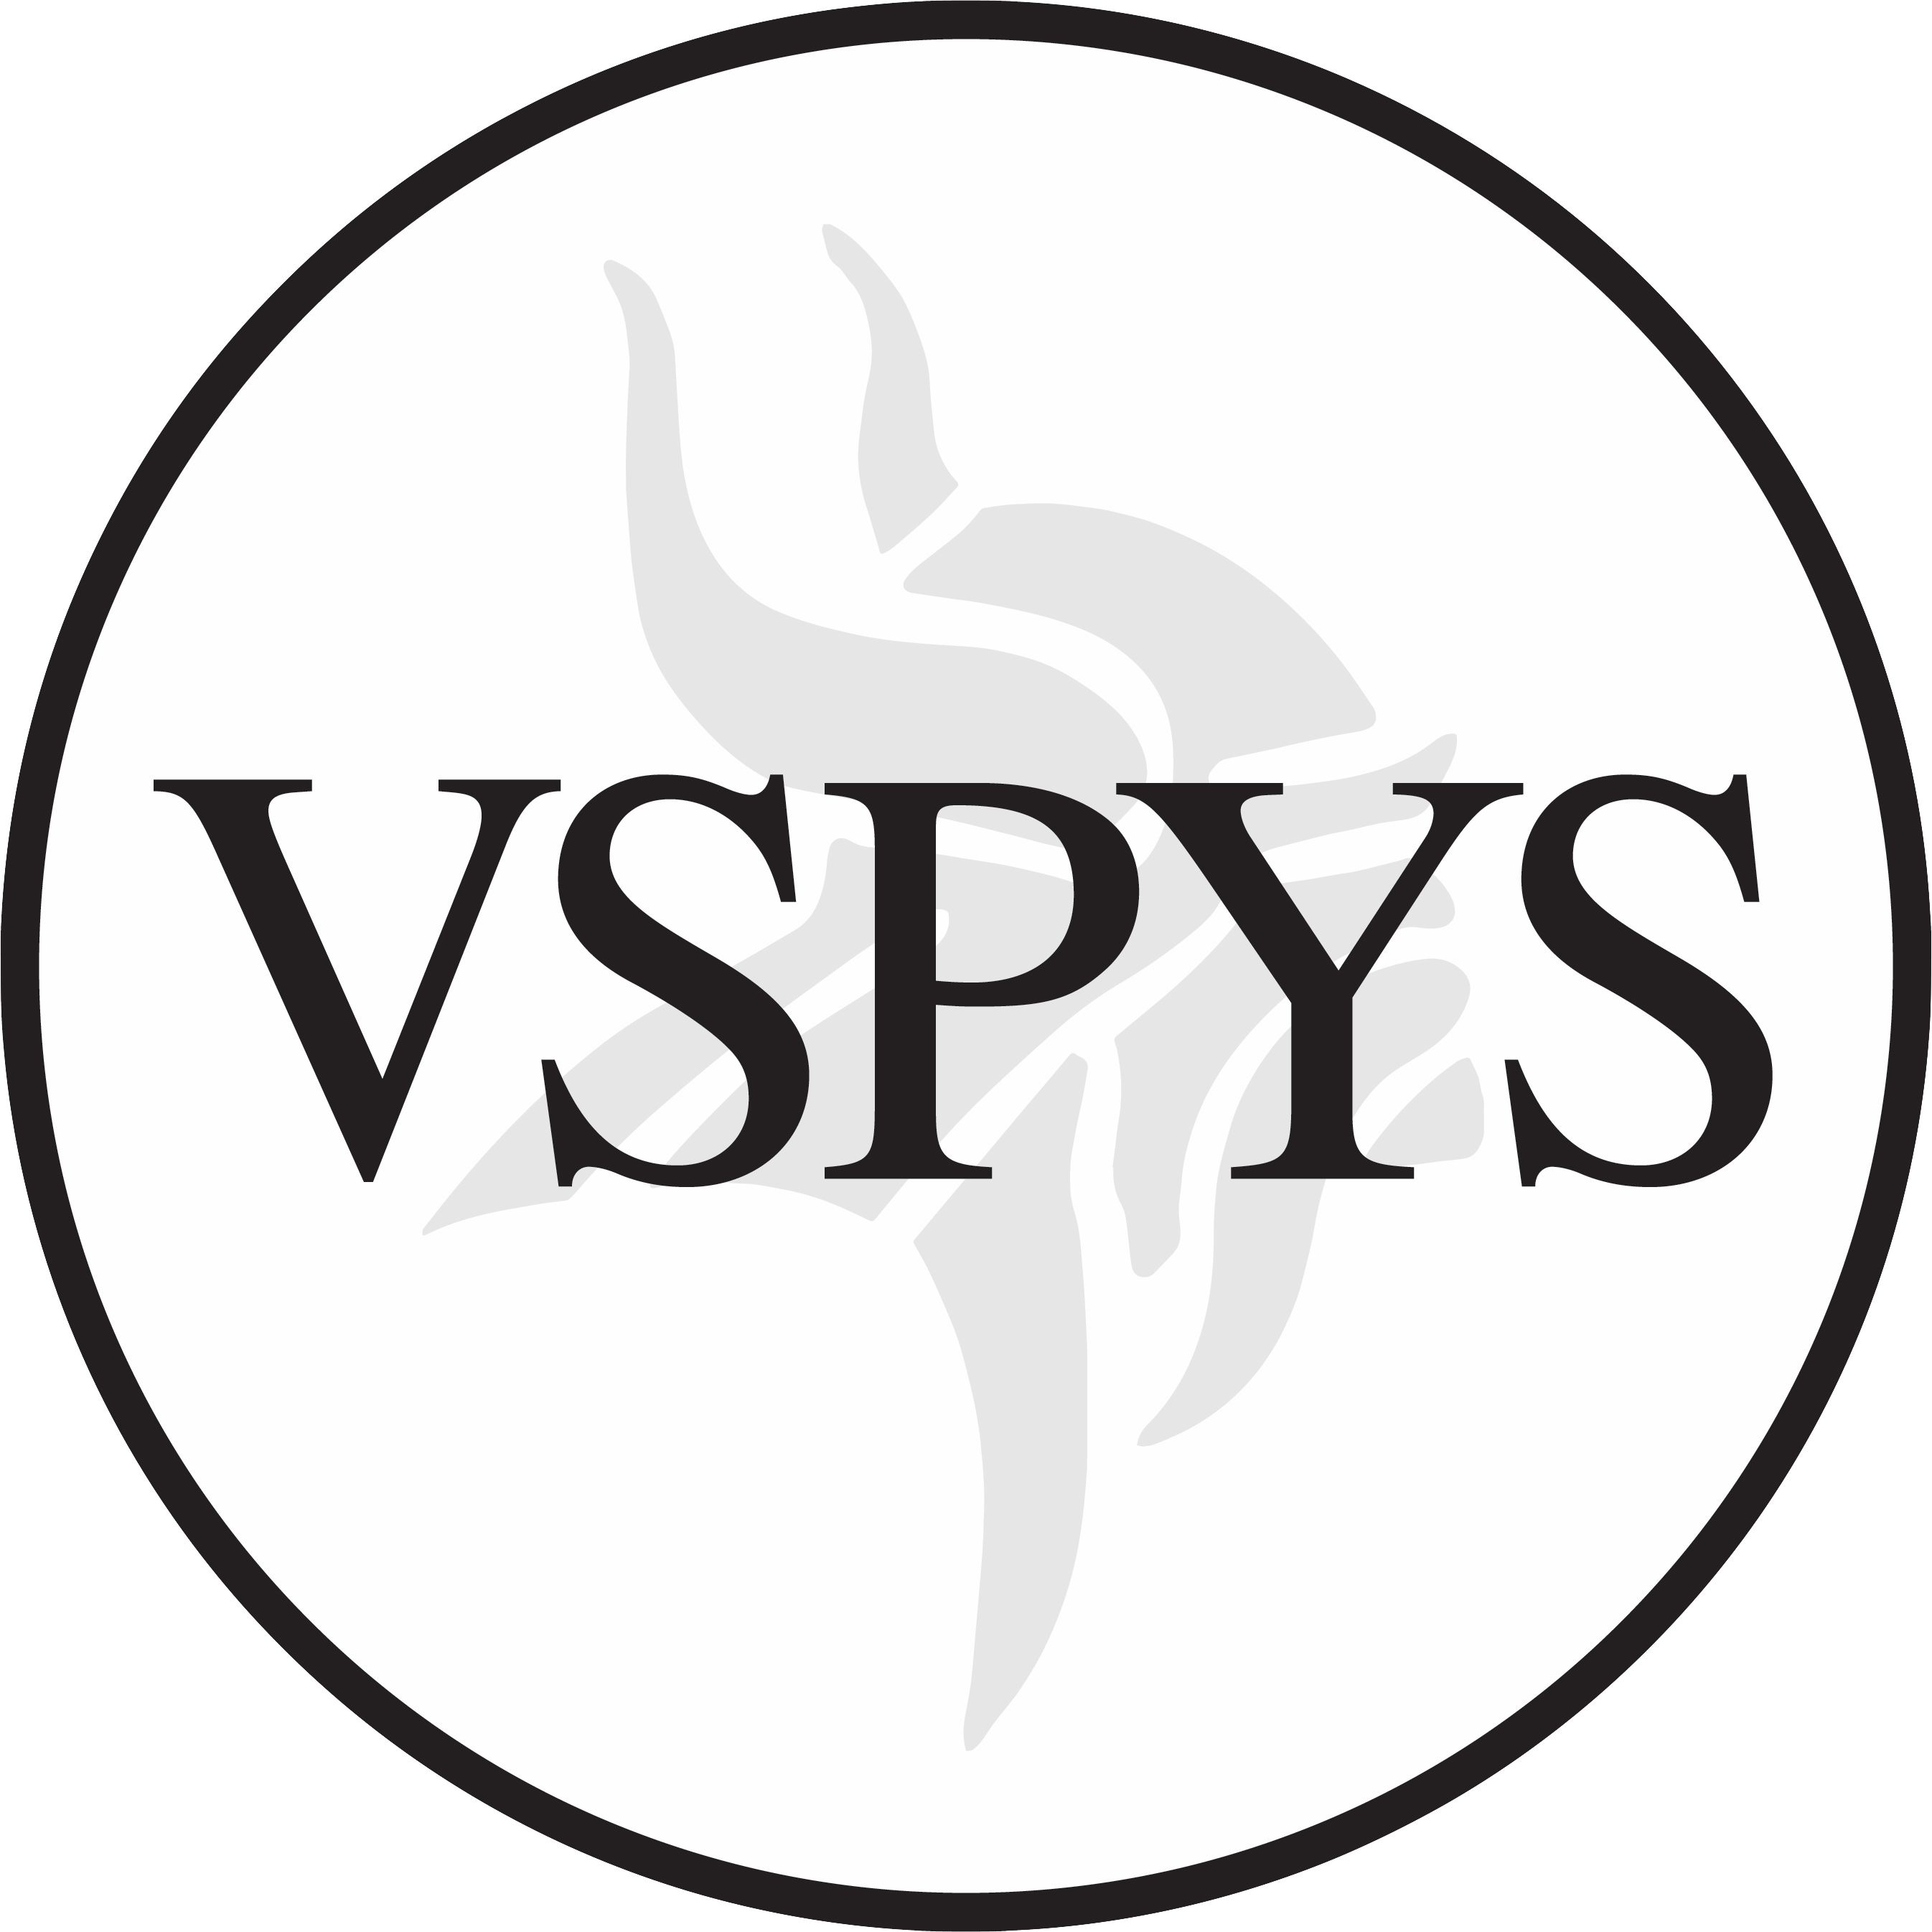 The VSPYS